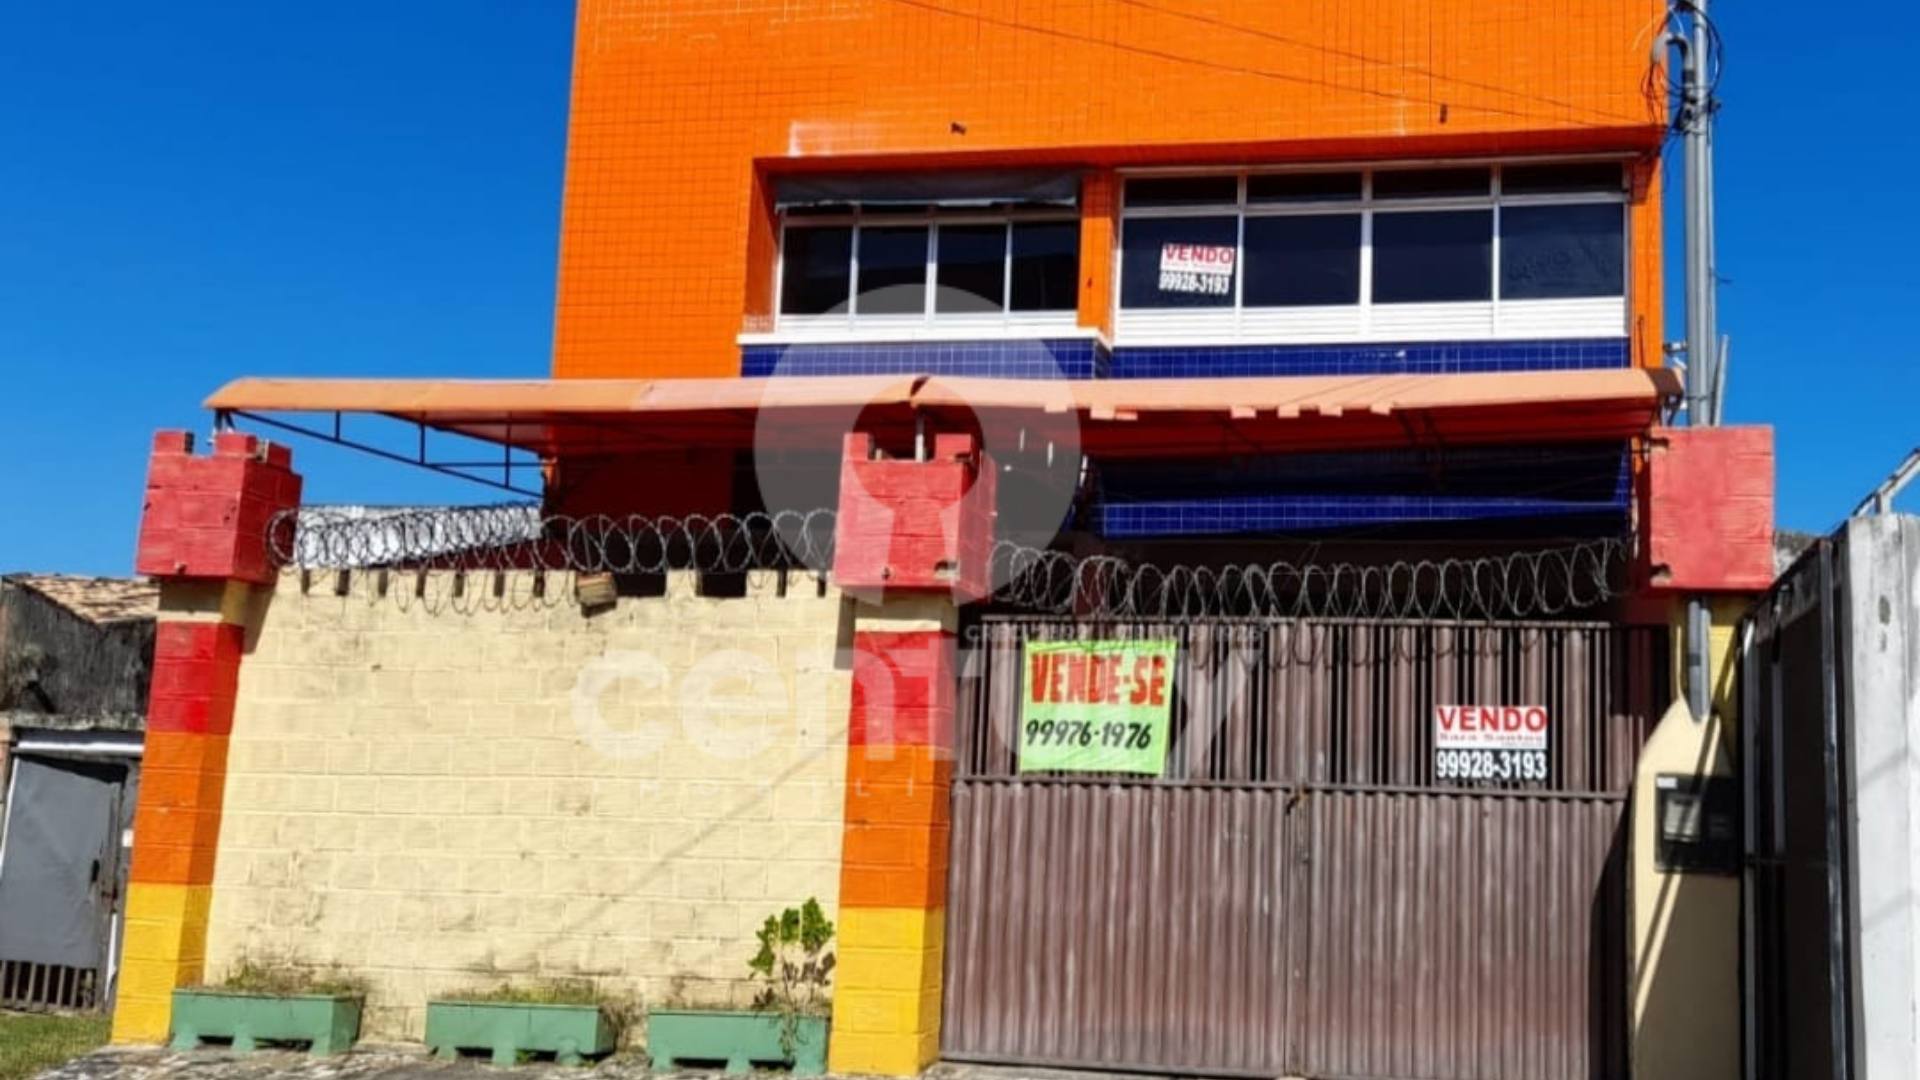 Ponto Comercial à venda no bairro Getúlio Vargas